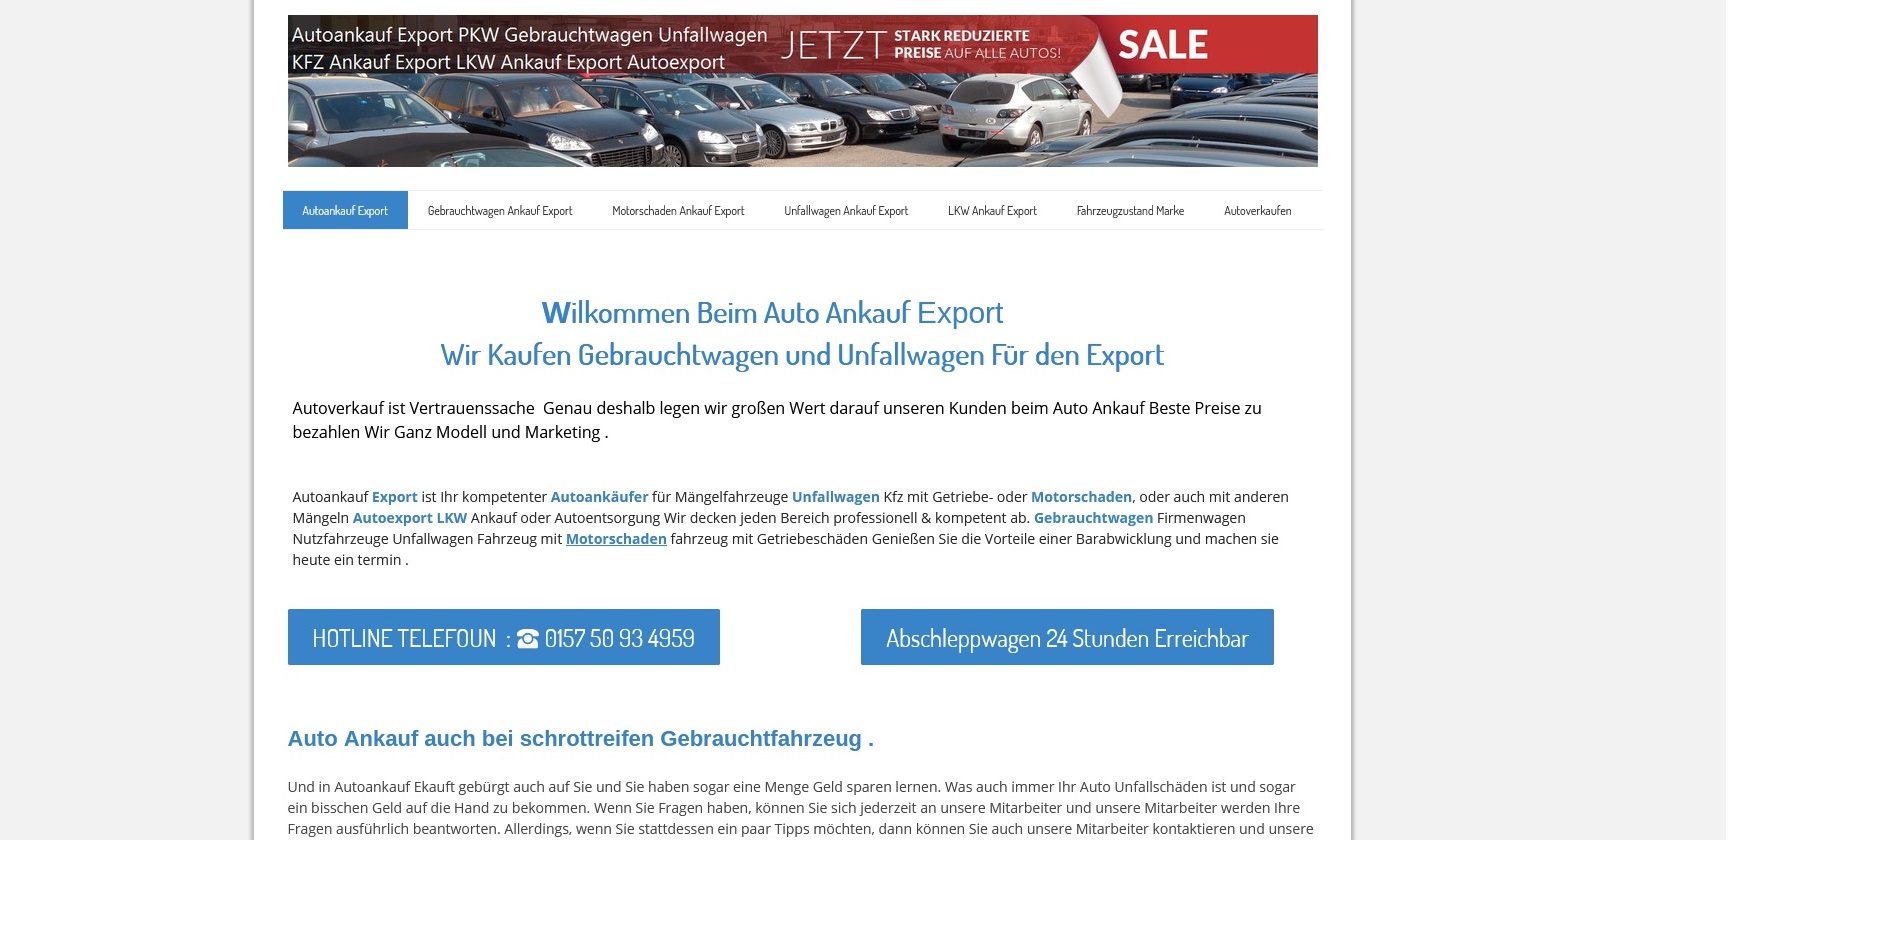 AutoAnkauf Bedburg: Wir Kaufen Gebrauchtwagen und Unfallwagen Für den Export 